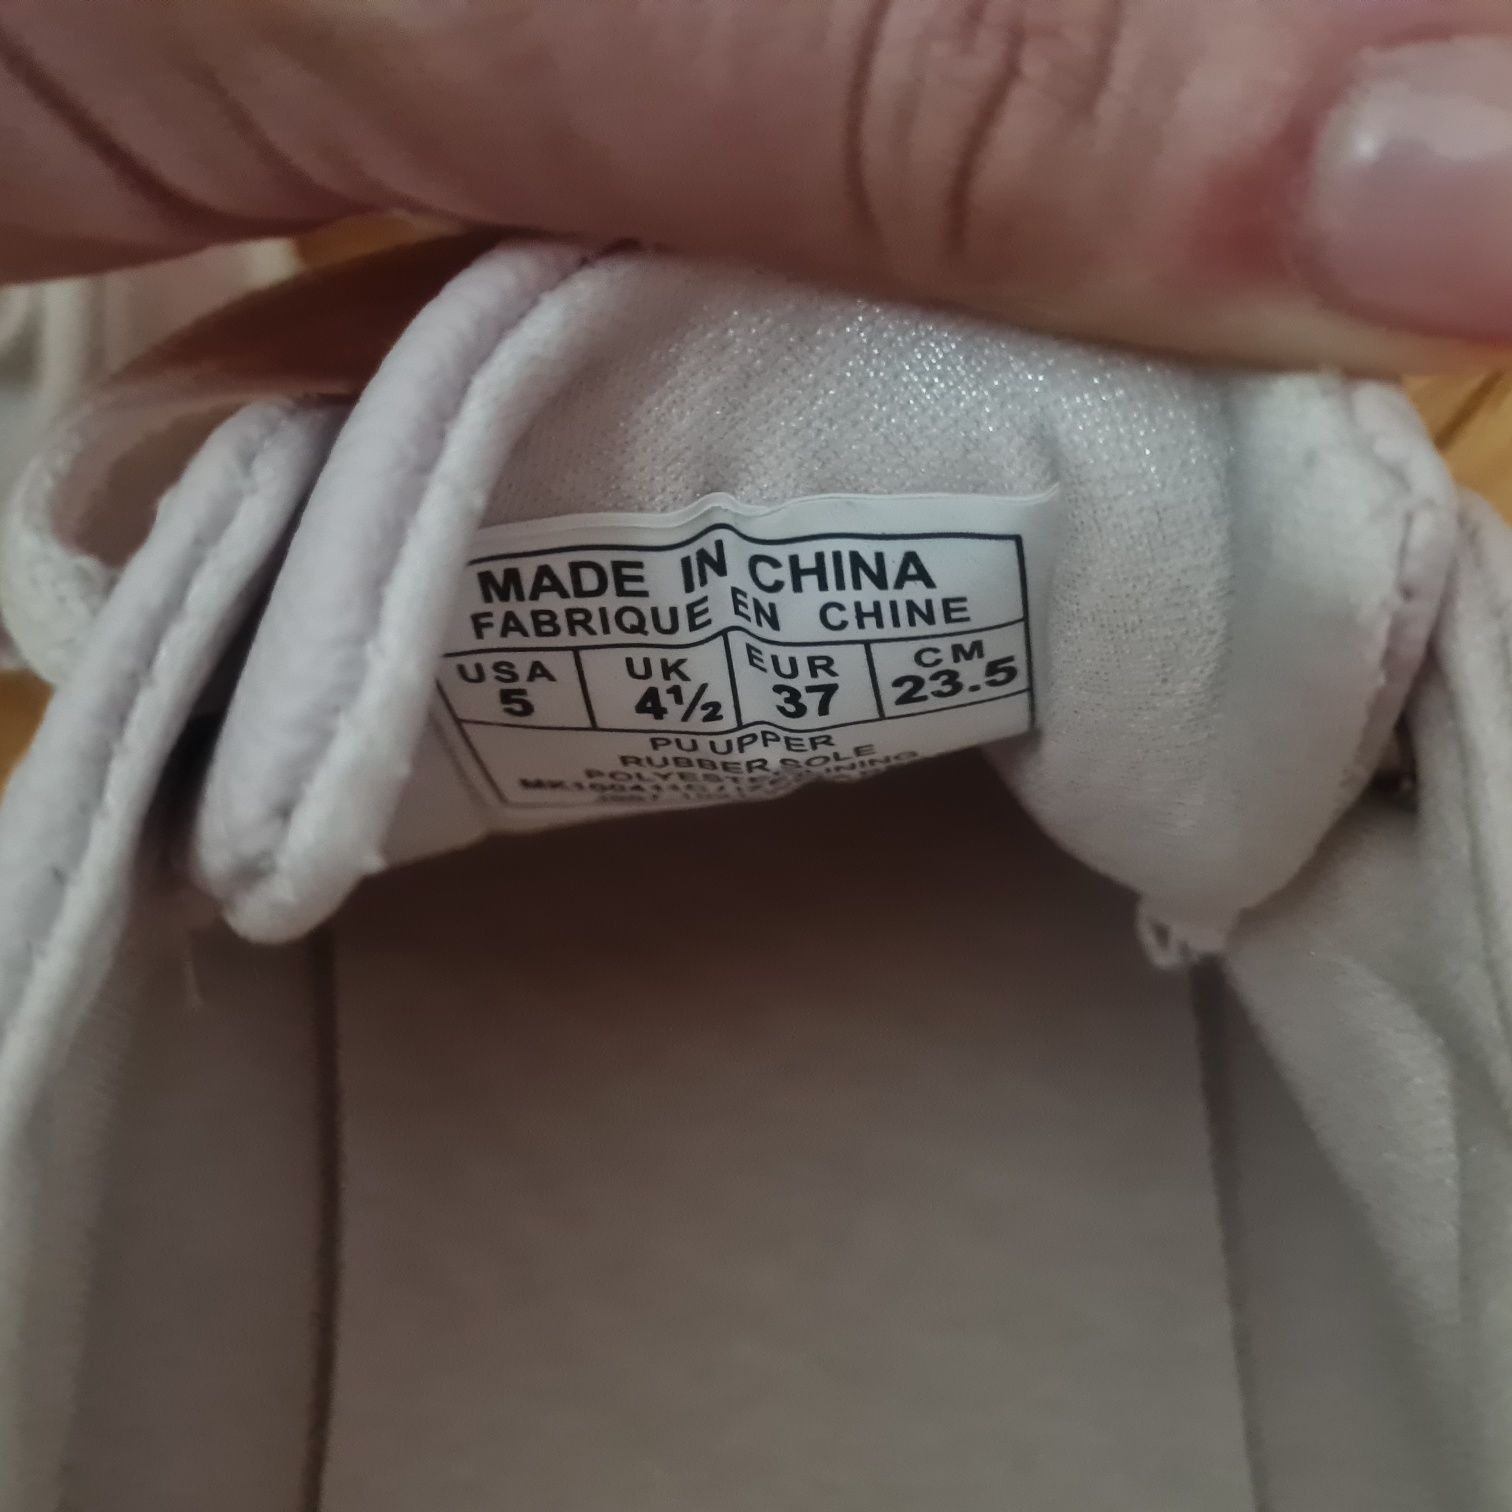 Michael Kors tenisówki różowe izetta r. 37 logowane sneakersy niskie t